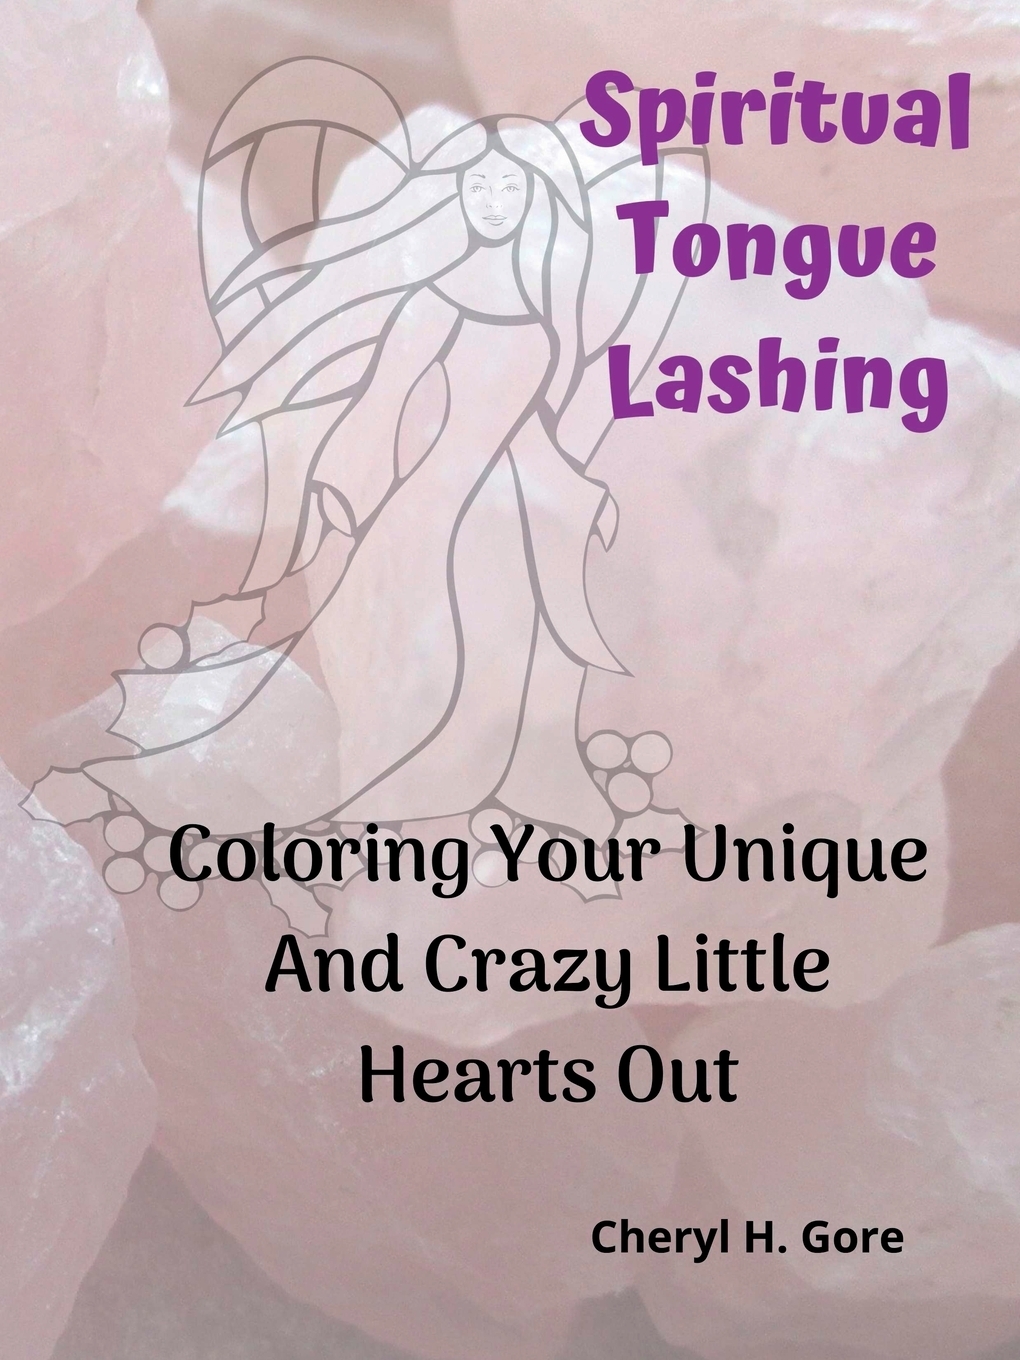 tongue lashing